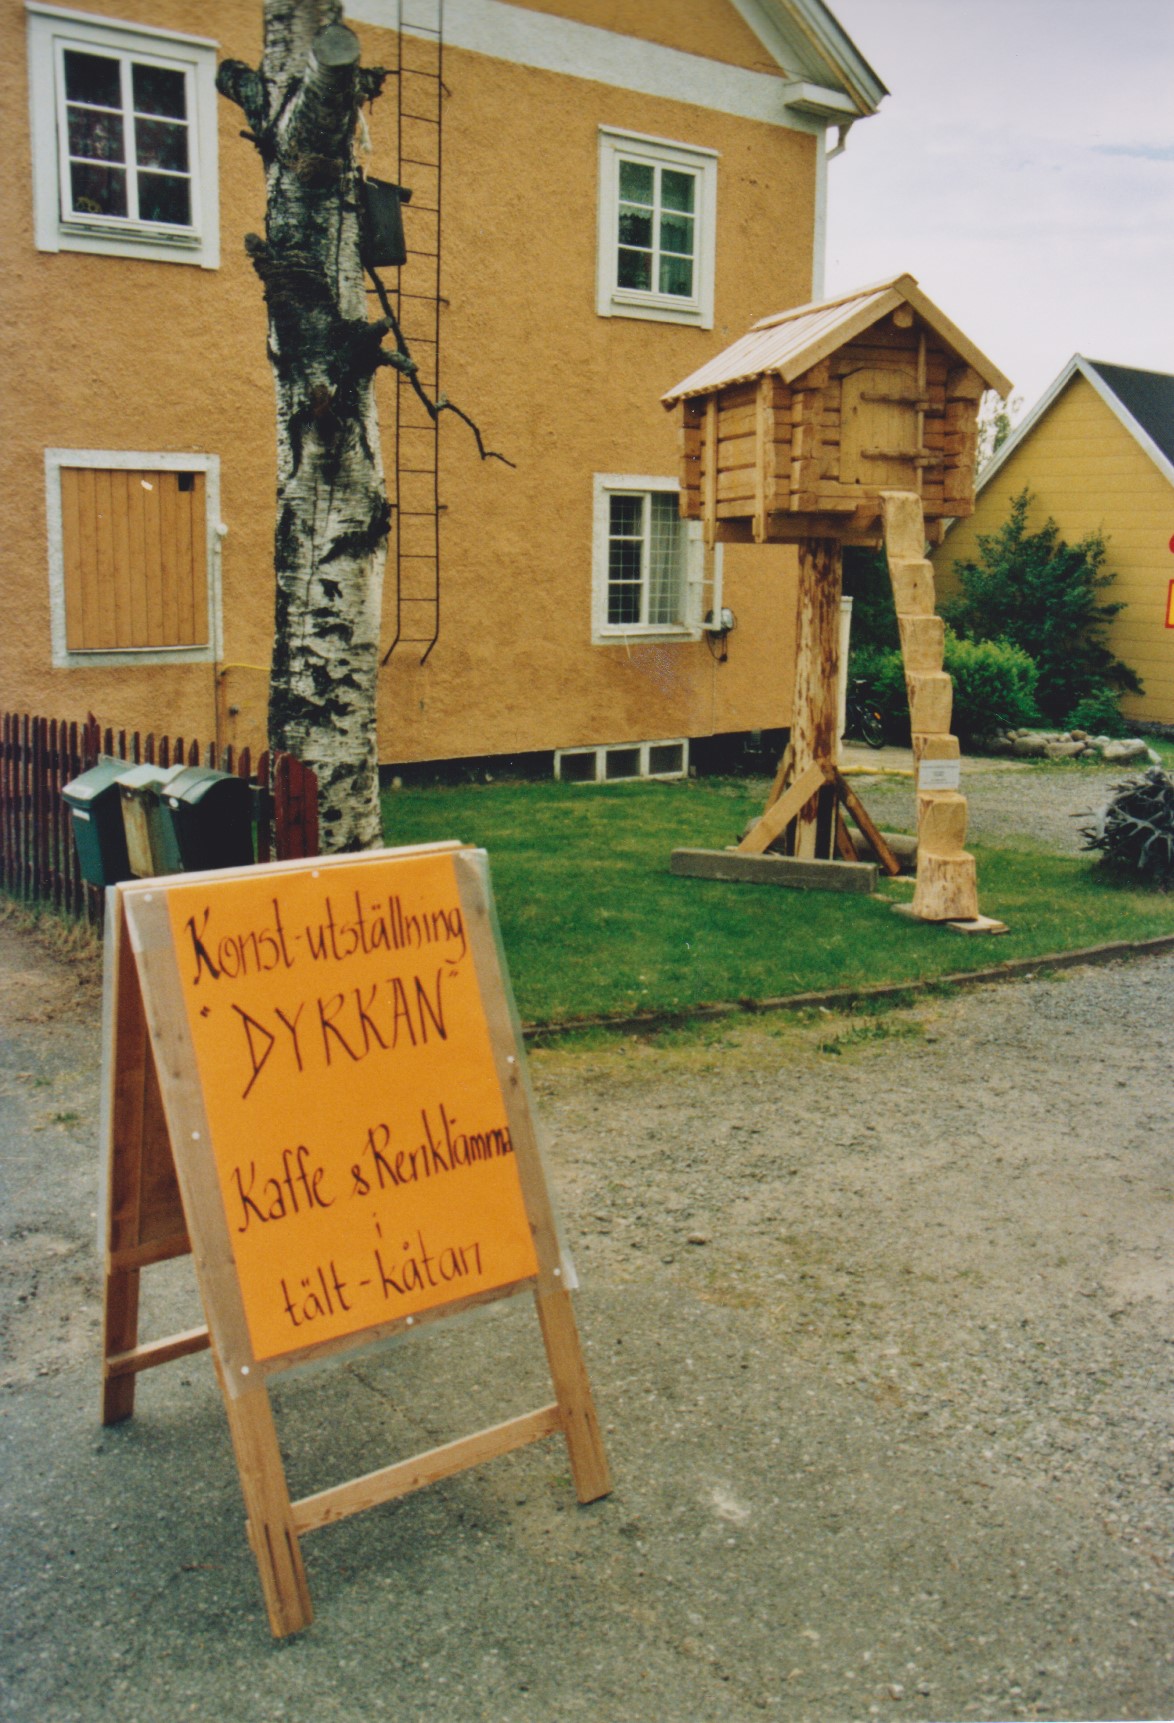 Affisch om Hembygdsdagarnas evenemang hos Risfjells Sameslöjd Konstutställning "Dyrkan" i gårdshuset och kaffeservering i kåtna på gården.